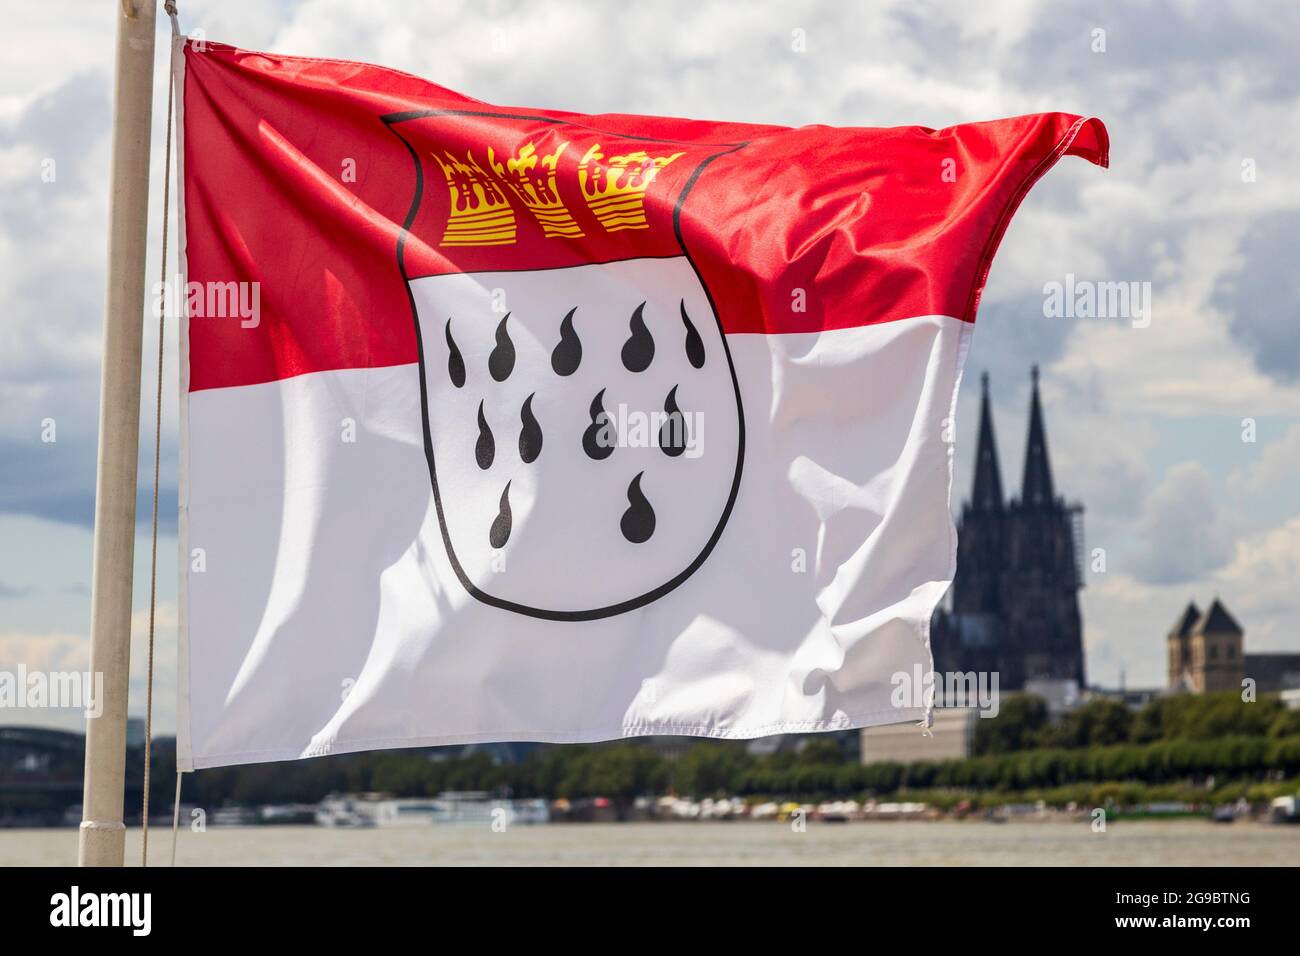 Wappen auf einer Flagge, Kölner Dom, Kölner Dom, hinten, Köln,  Nordrhein-Westfalen, Deutschland, Europa Stockfotografie - Alamy